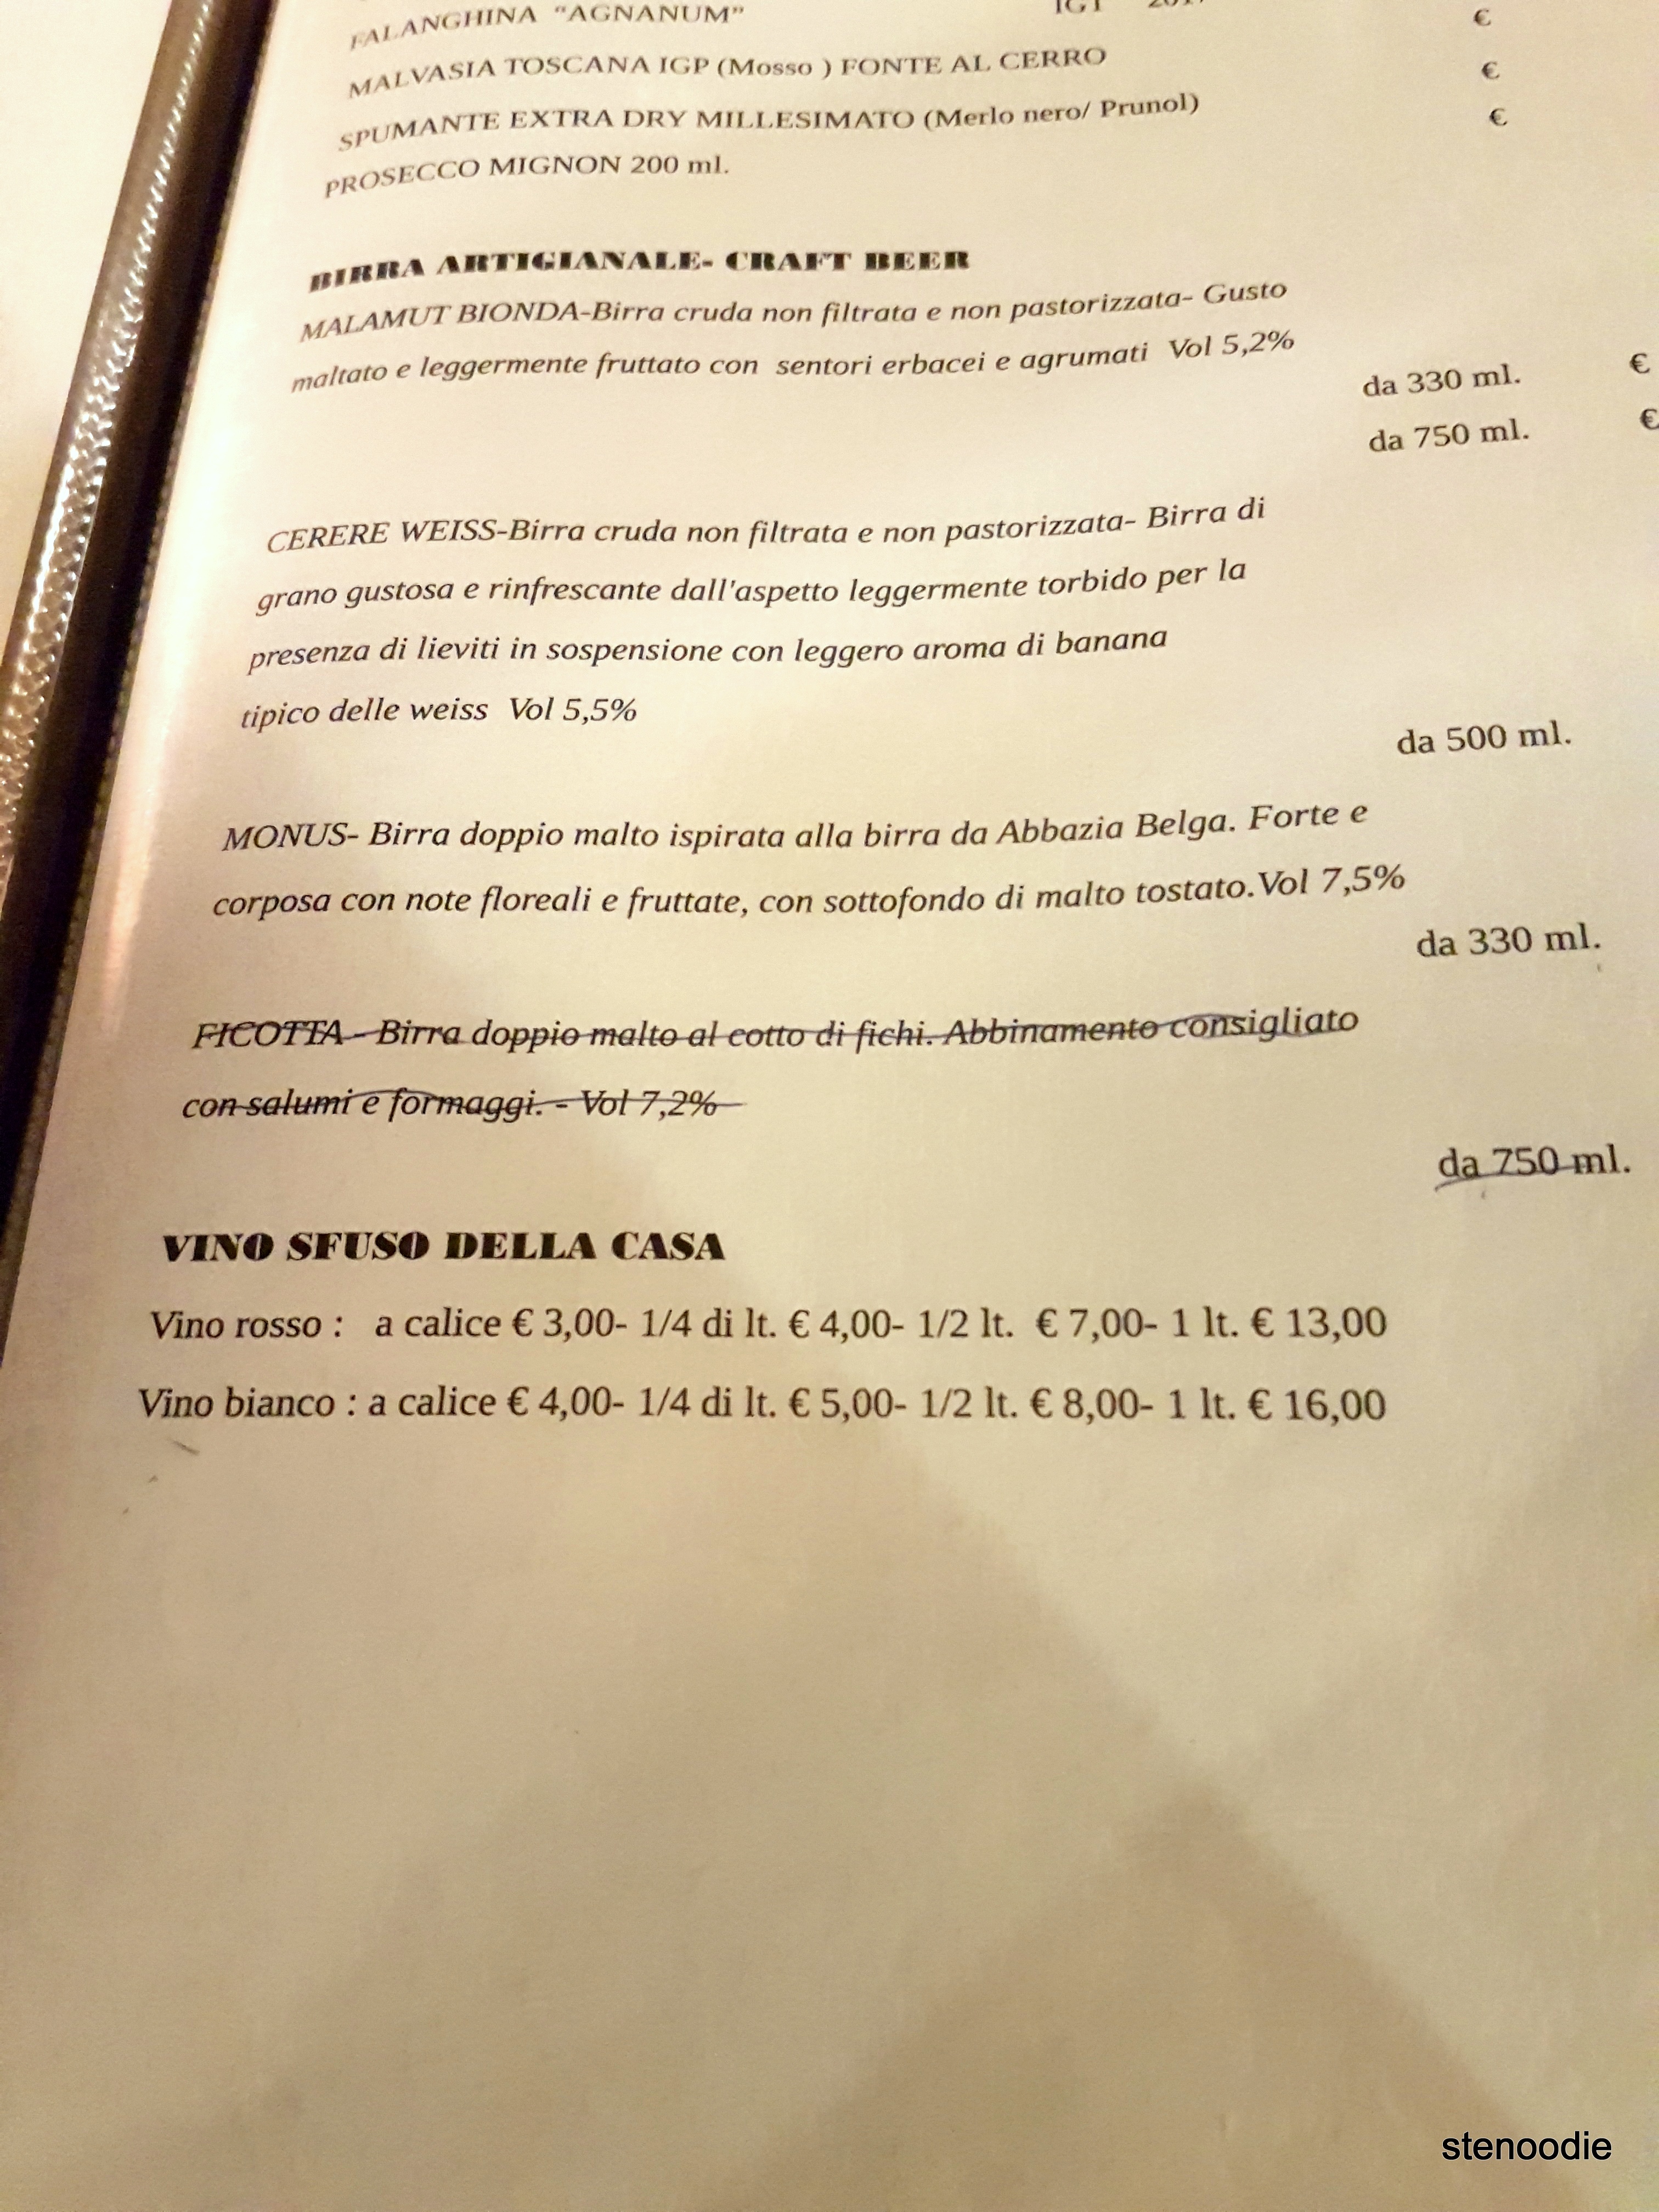 Trattoria Diladdarno menu and prices